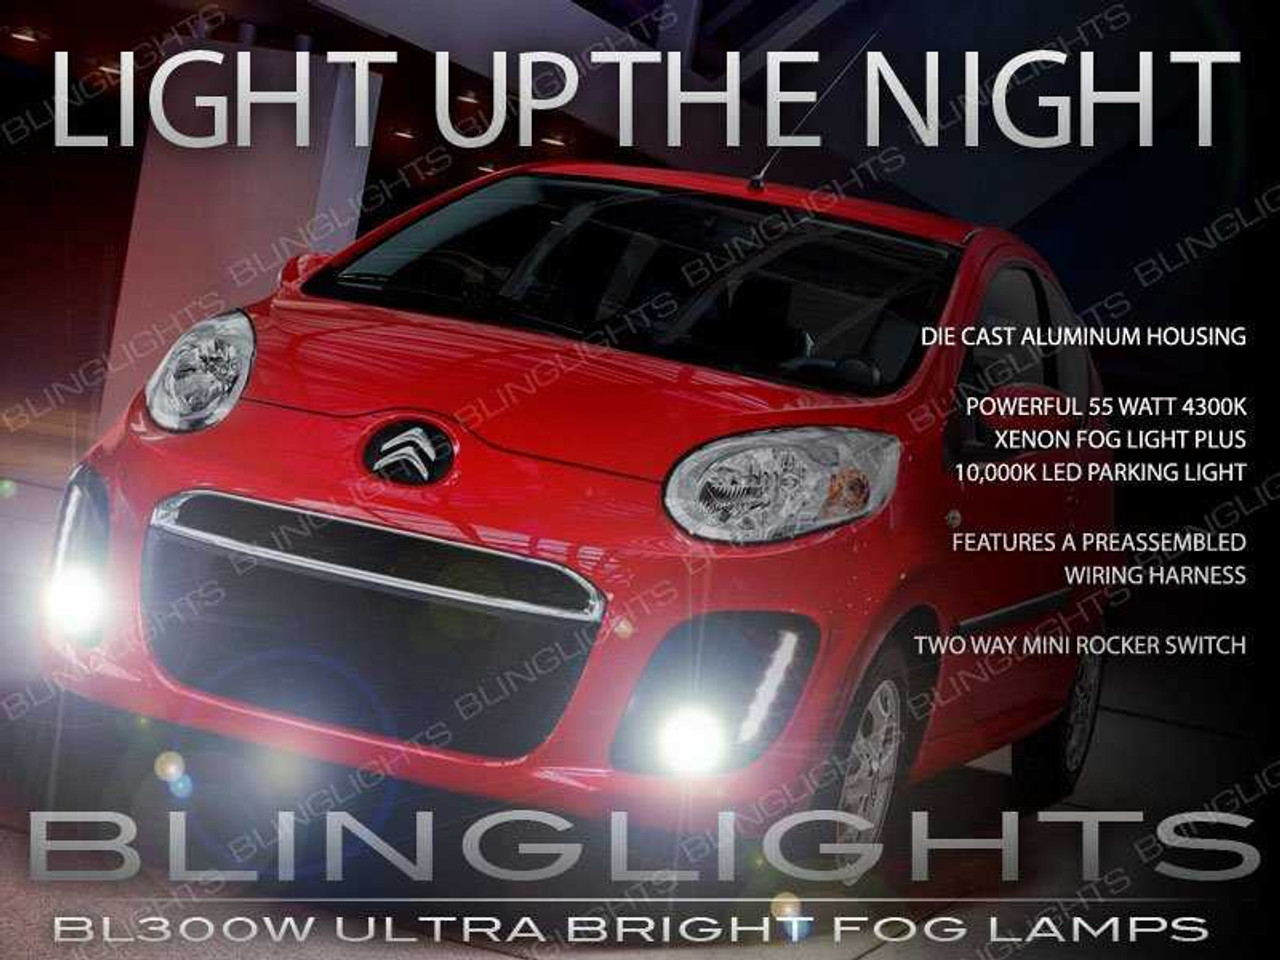 2012 2013 2014 Citroën C1 Xenon Fog Lamp Driving Light Kit